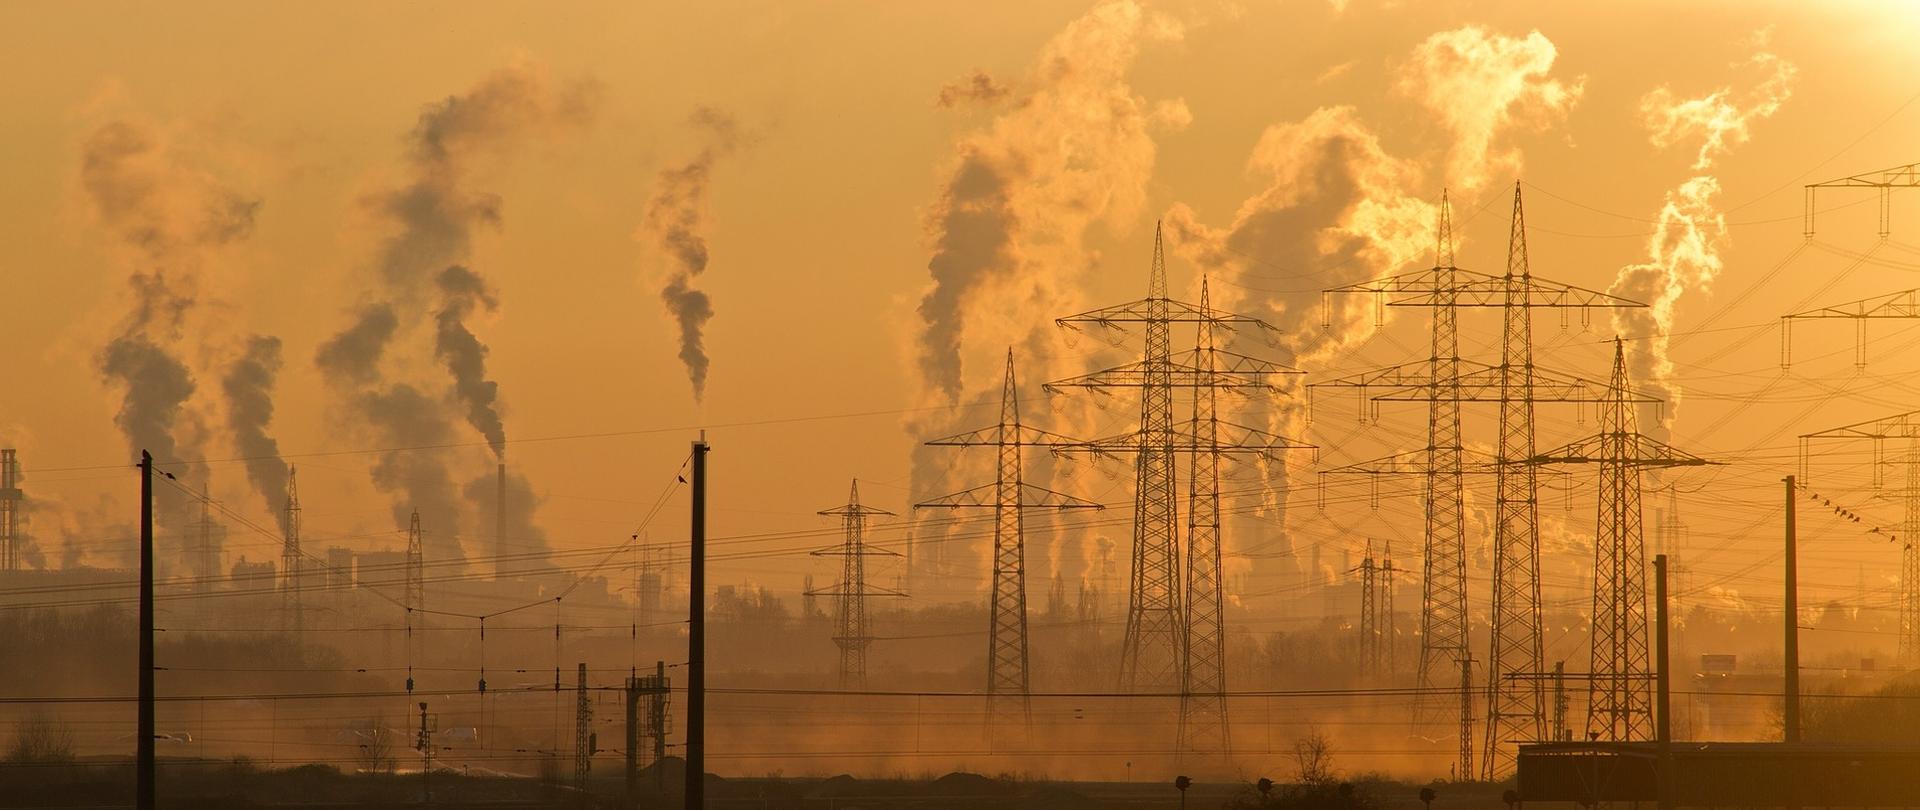 Zdjęcie przedstawia krajobraz przemysłowy z dymiącymi kominami w tle.